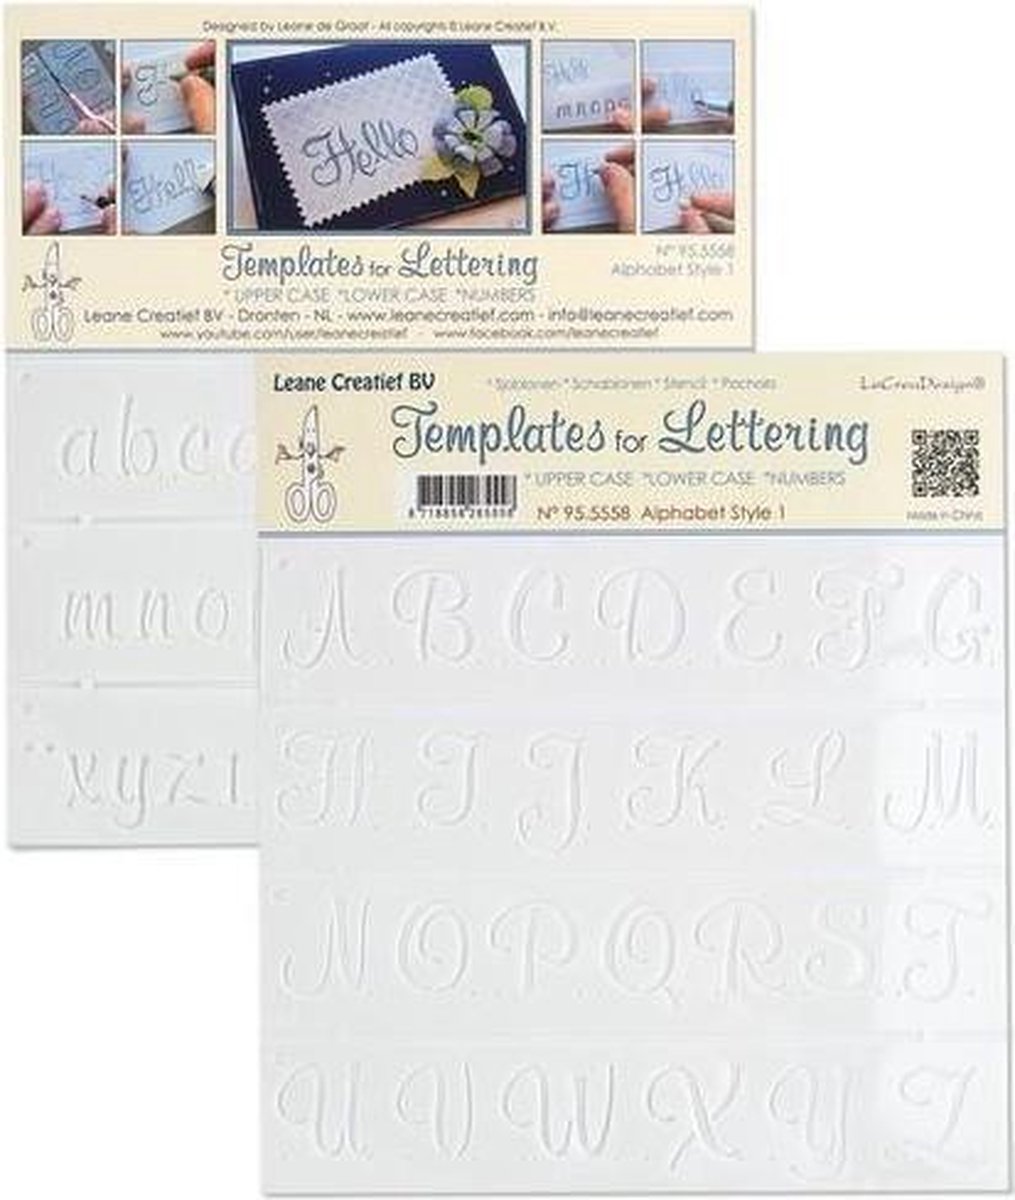 LeCrea - Templates for Handlettering alfabet stijl 1 95.5558